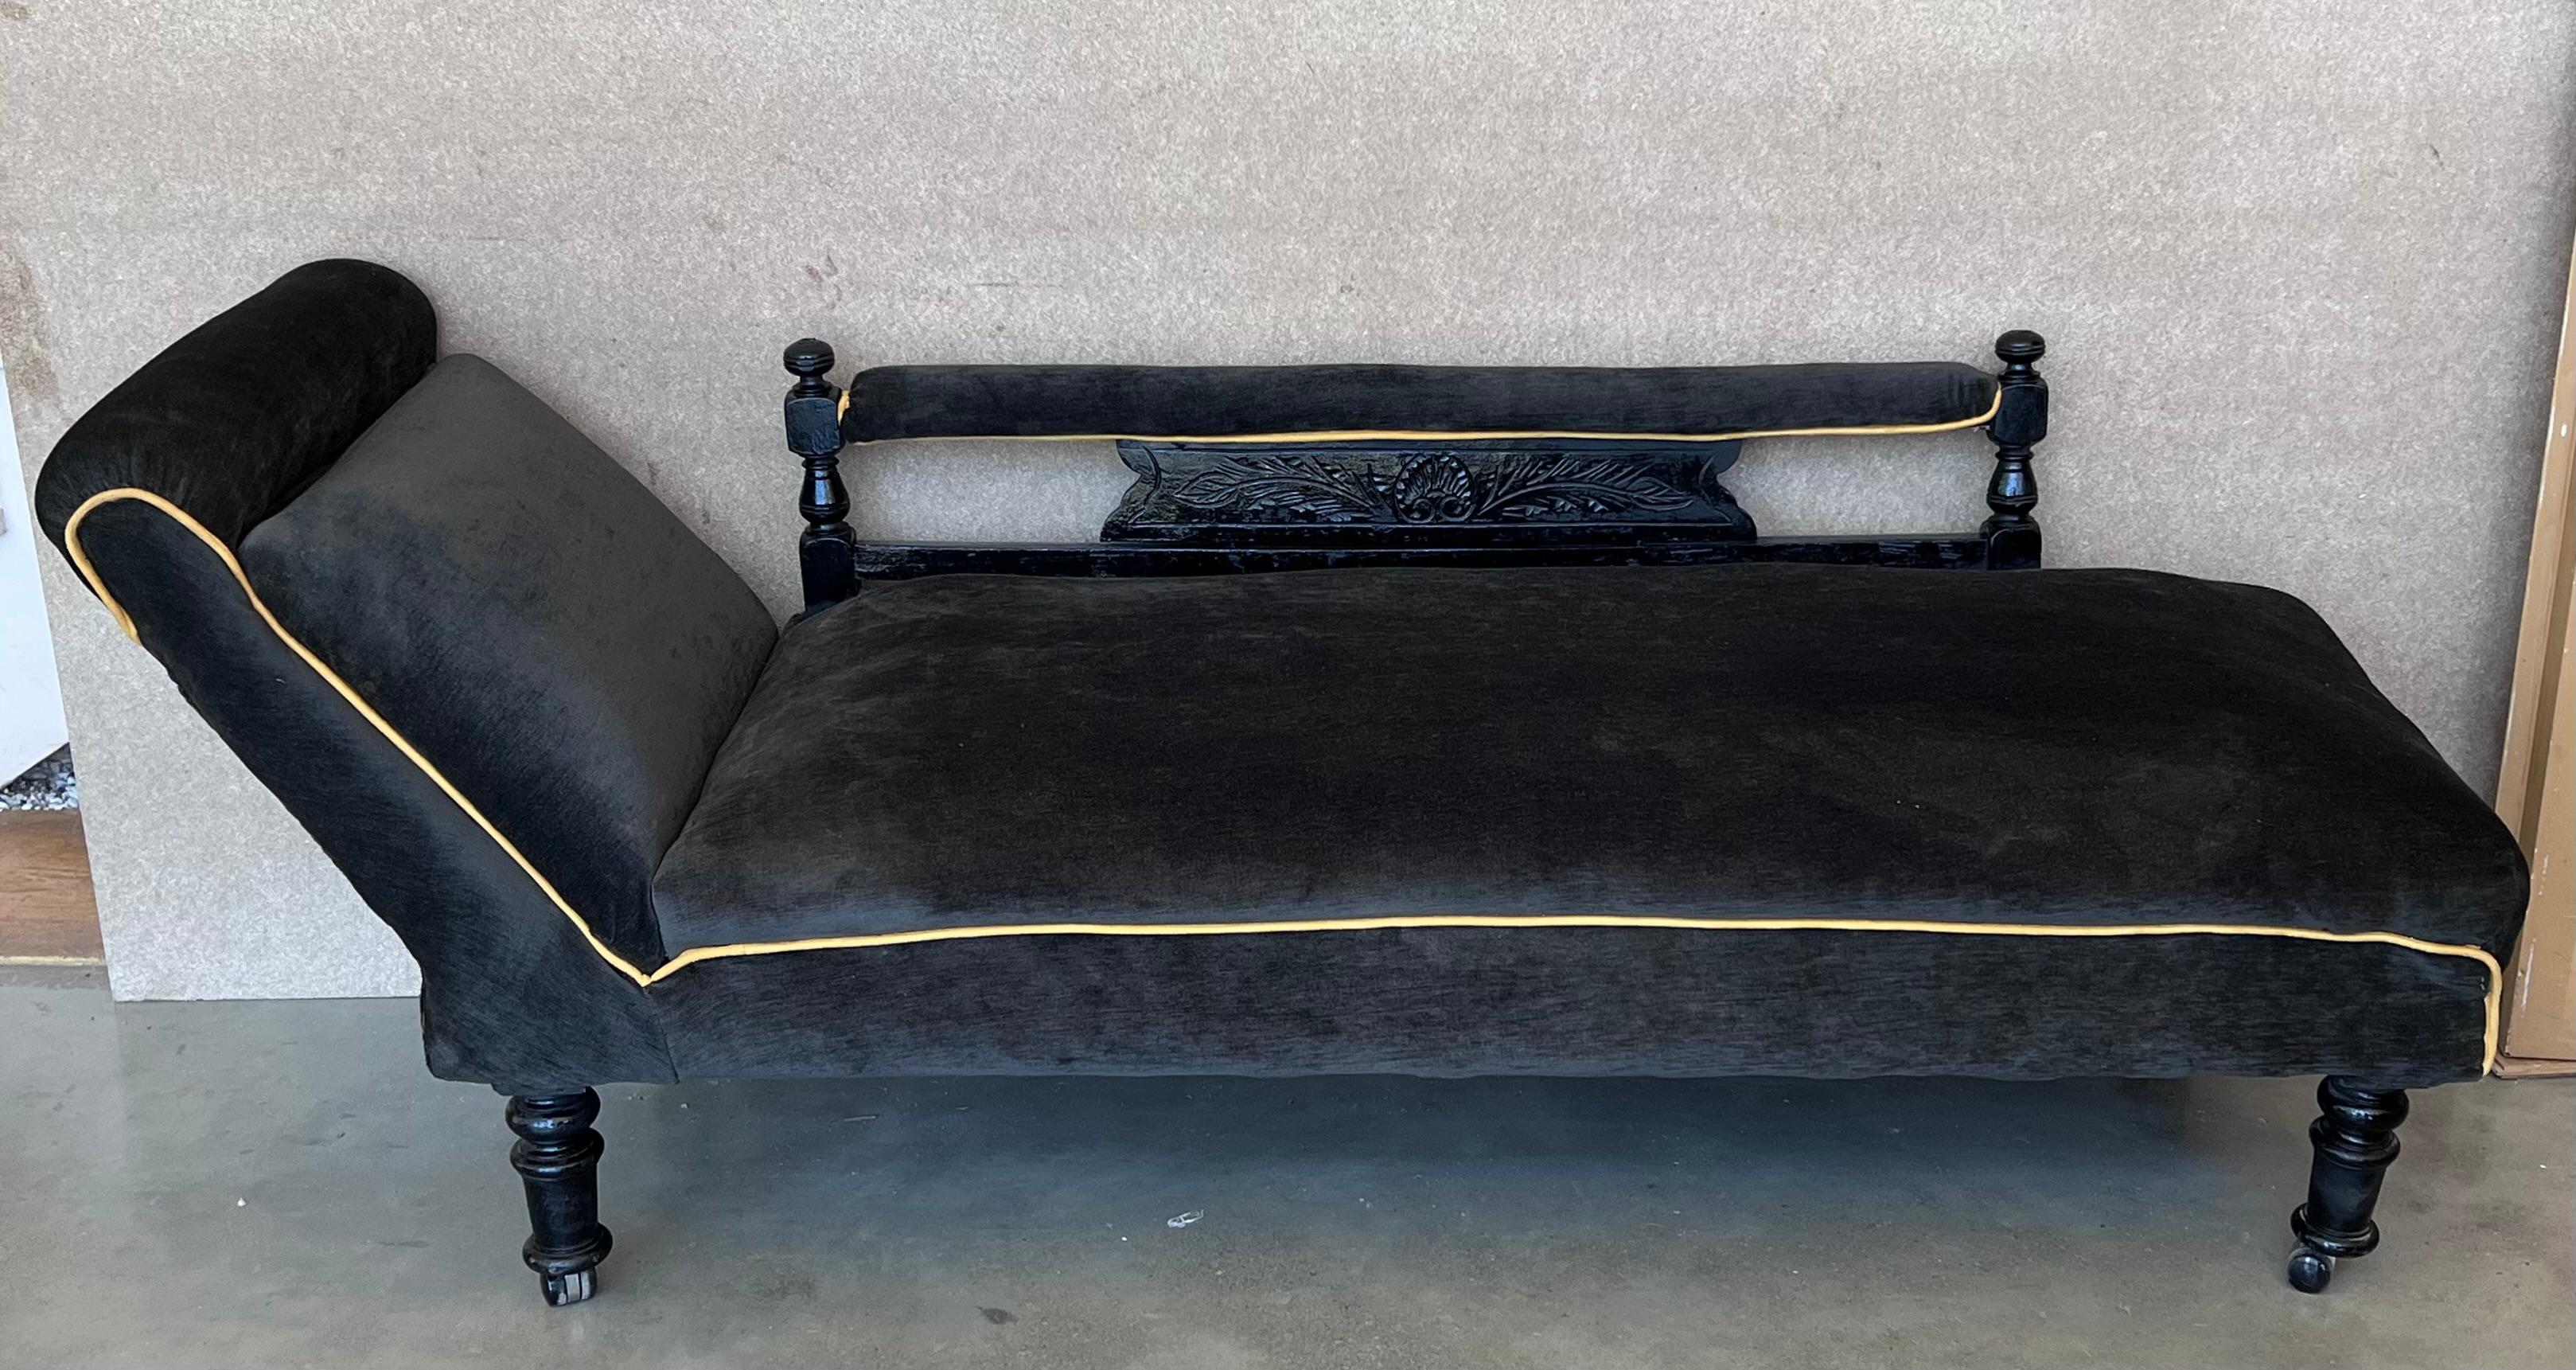 black velvet chaise lounge